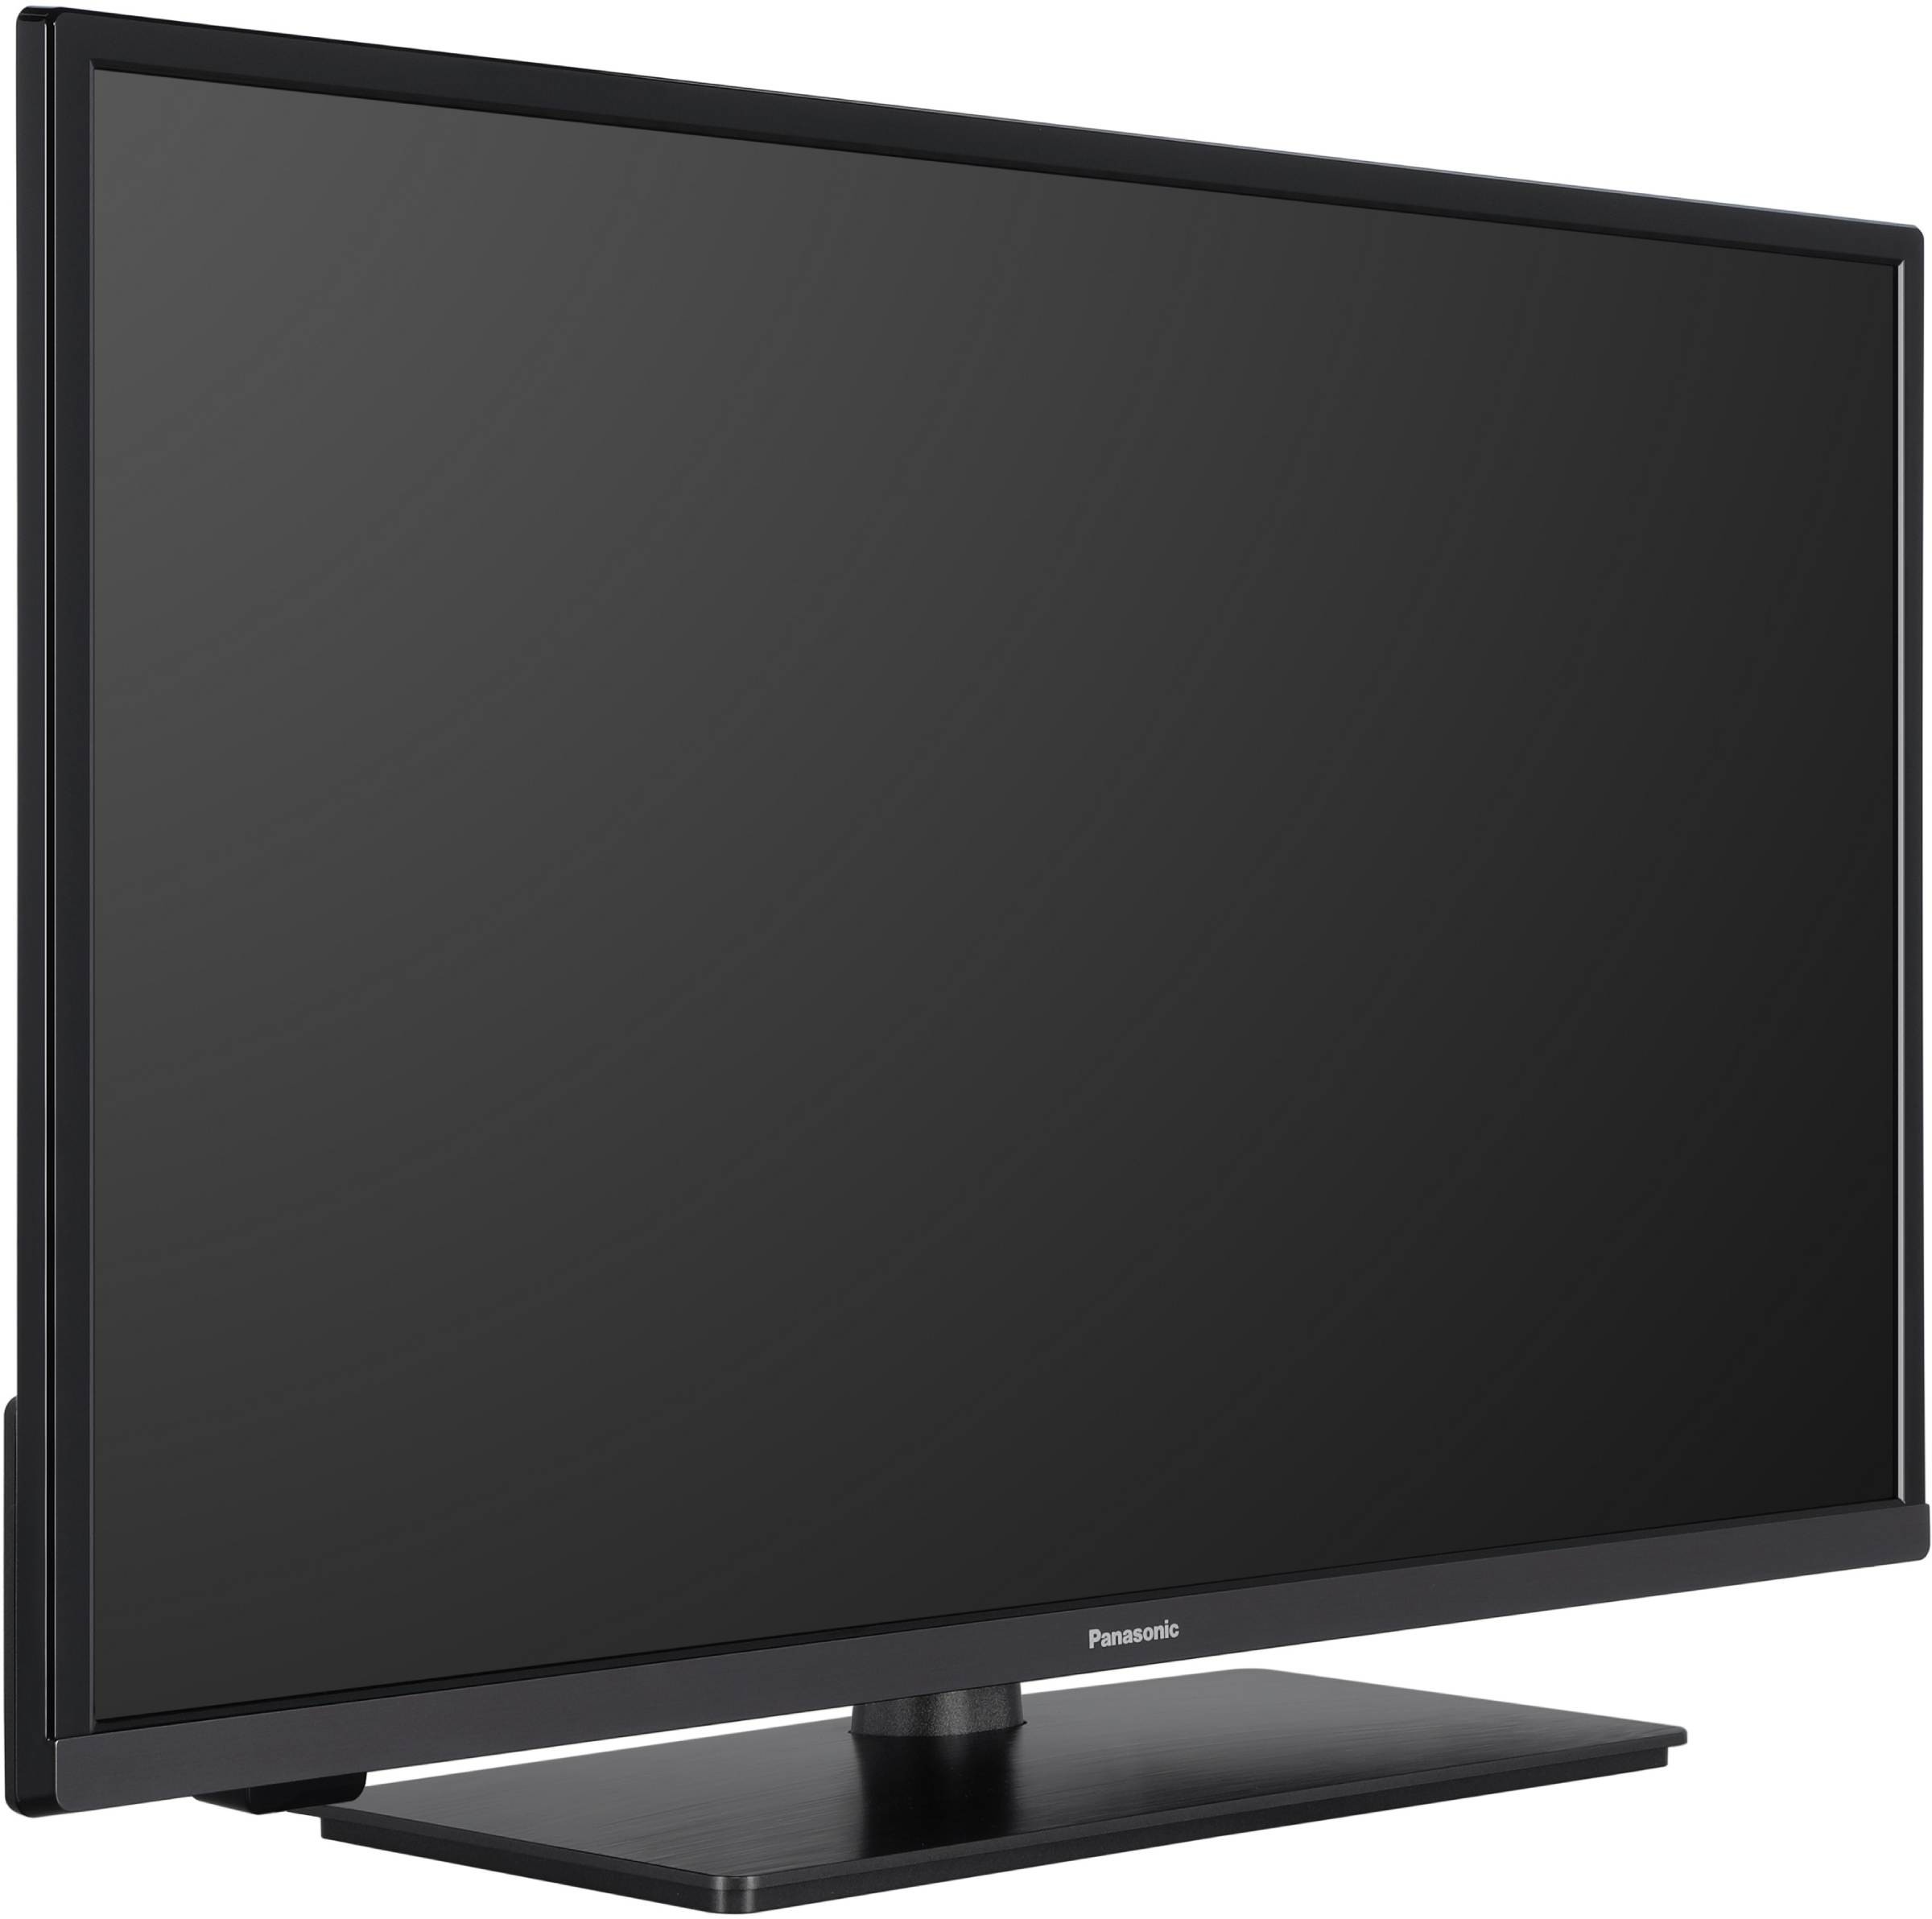 PANASONIC TV LED 80 cm  - TX-32MS480E